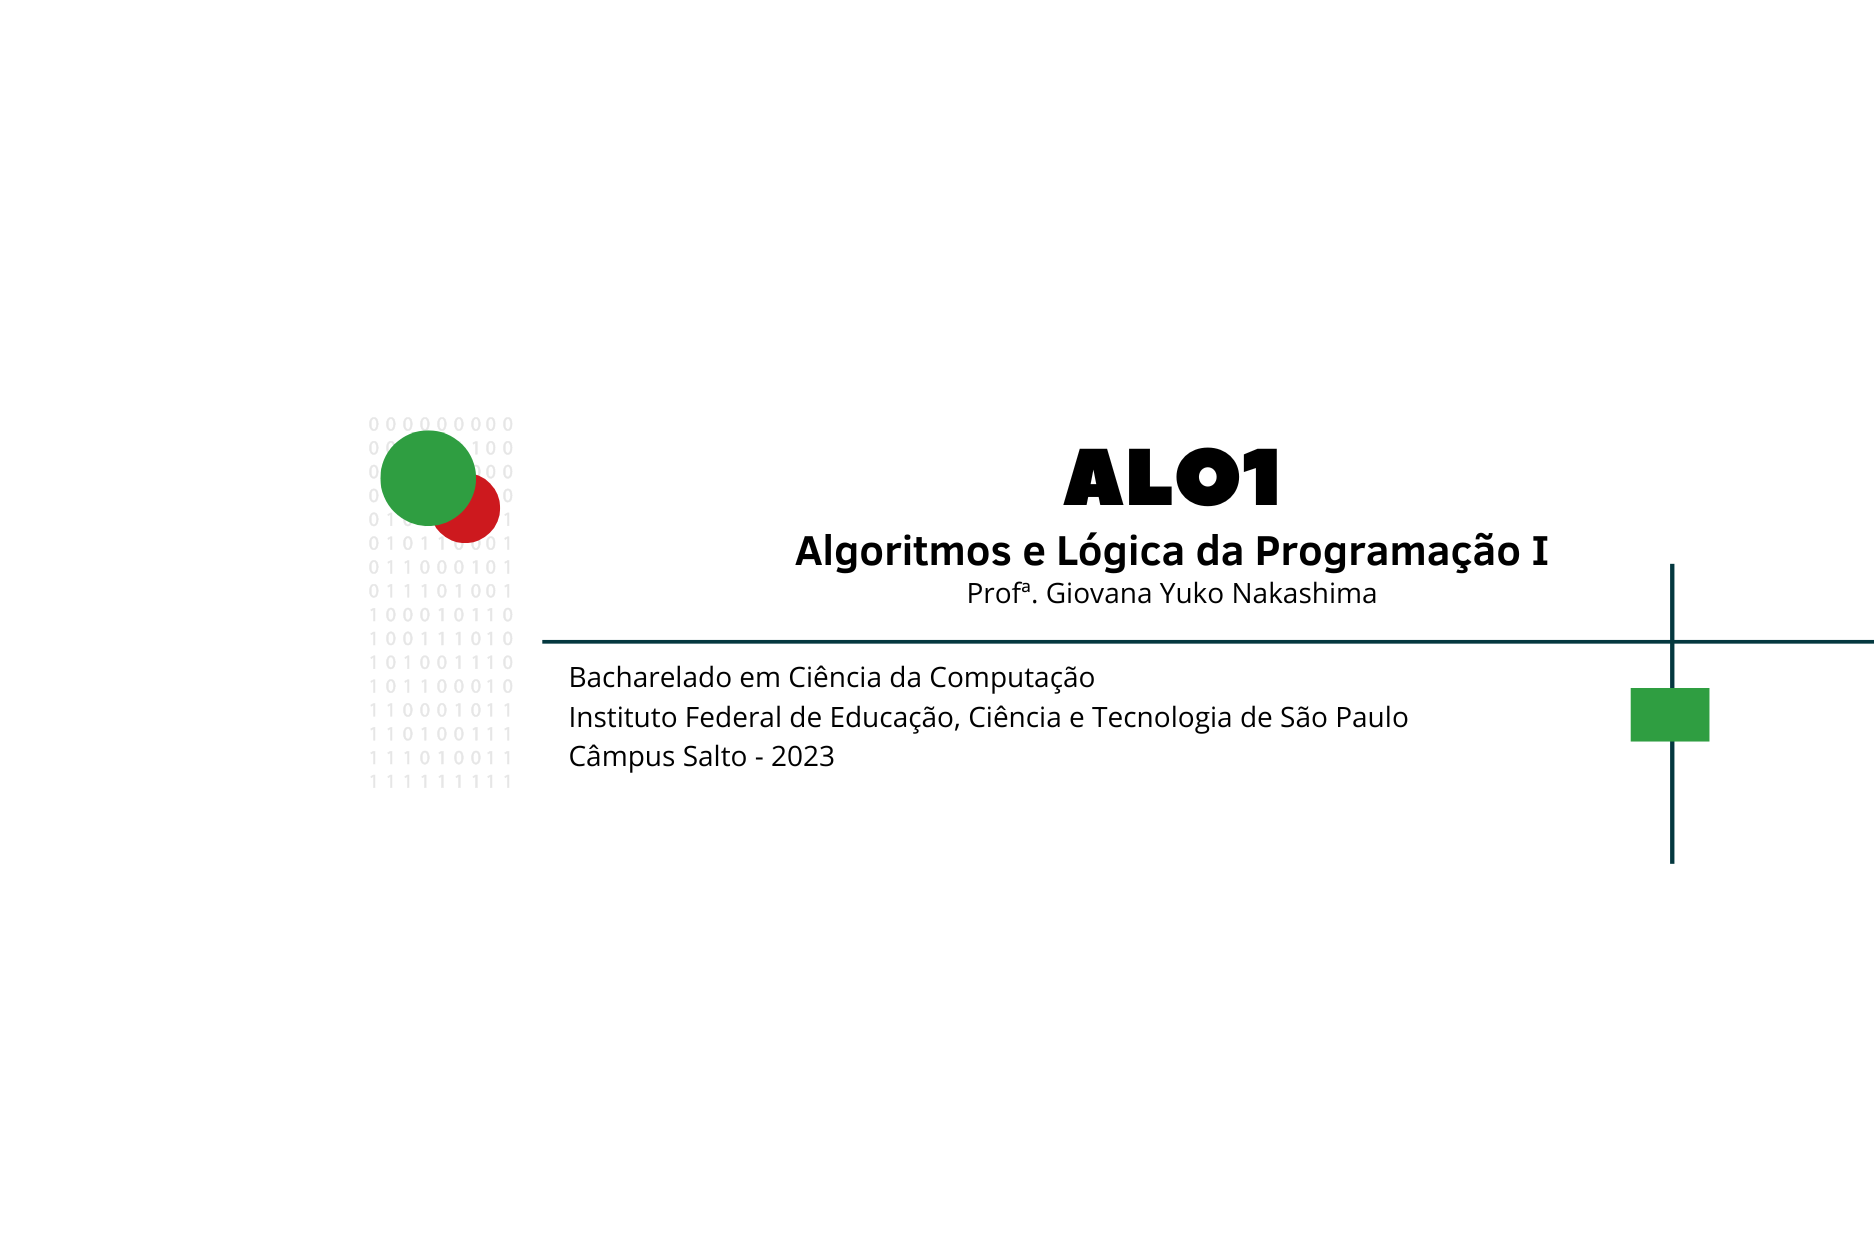 ALO1 - LAPC - Algoritmos e Lógica de Programação I - Laboratório de Programação de Computadores - BCC - 2023 - Profª Giovana